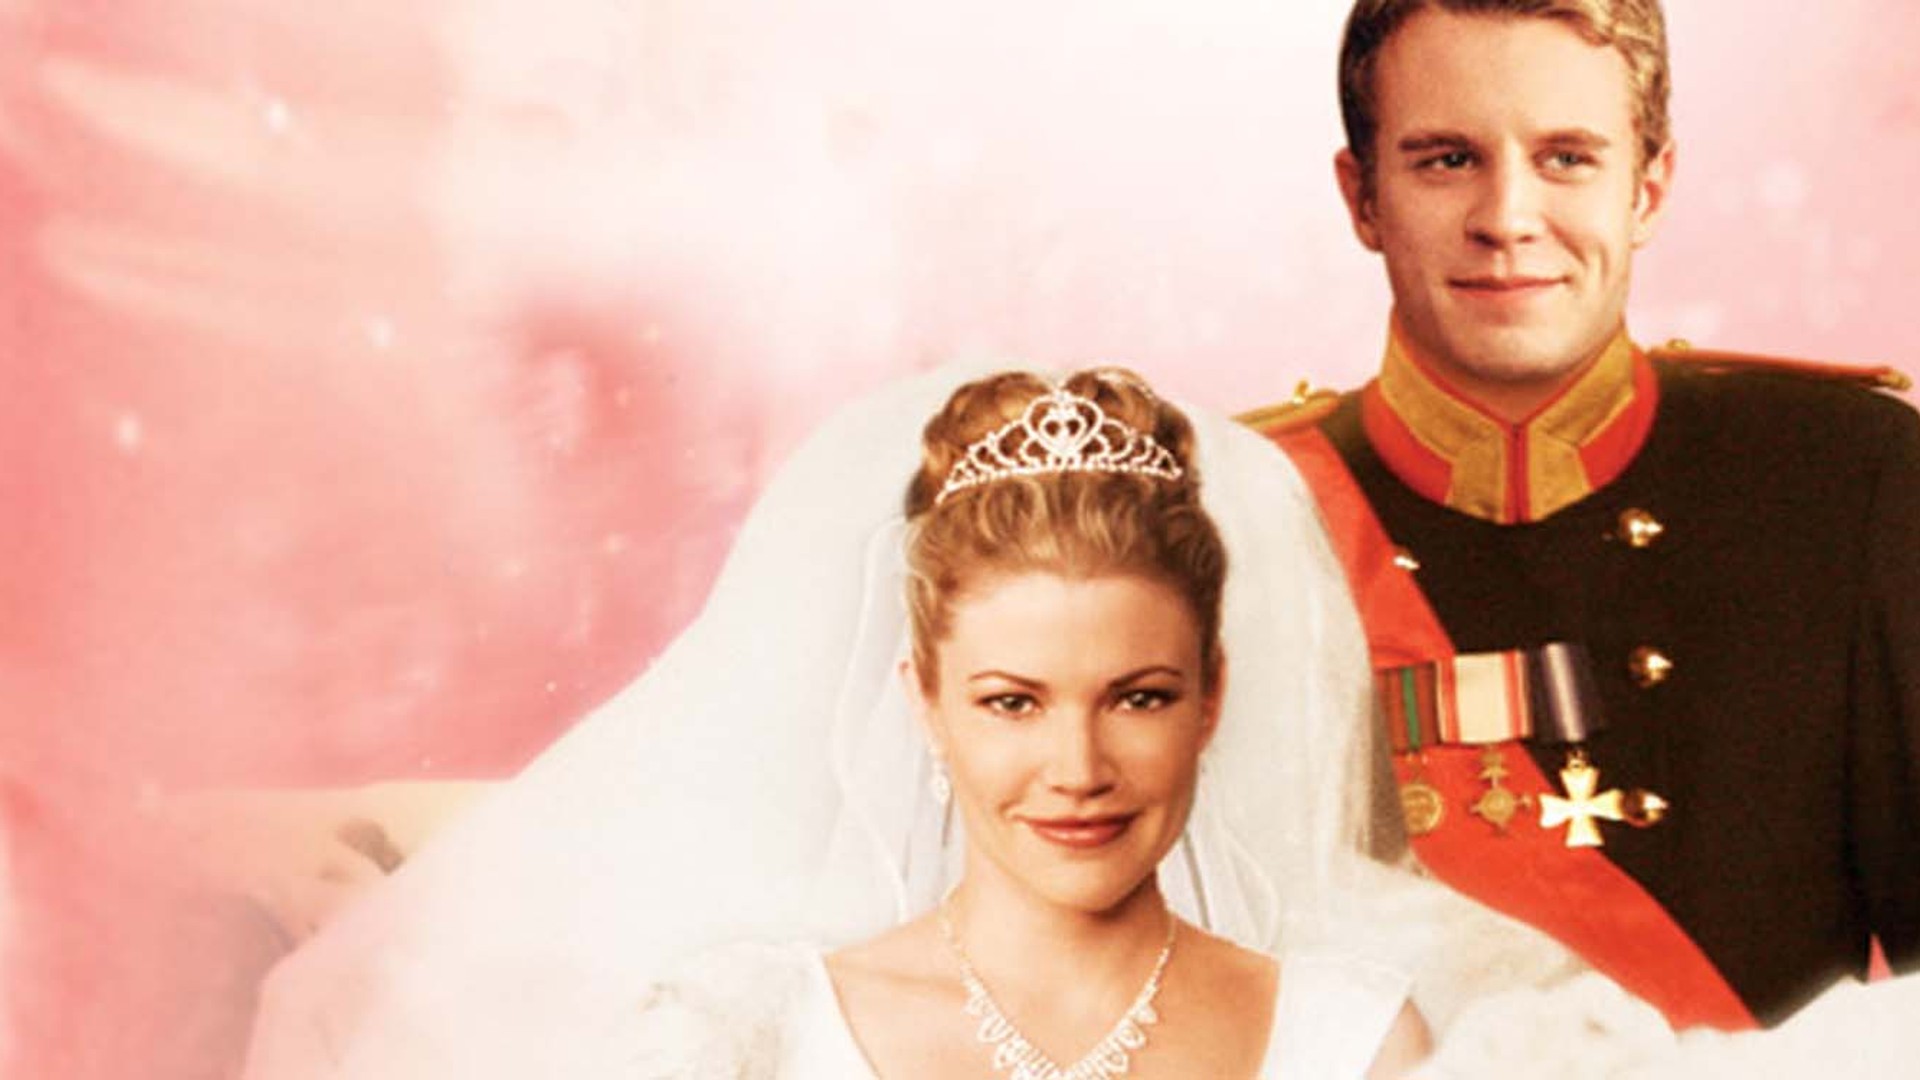 Eu și prințul 2: Nunta regală